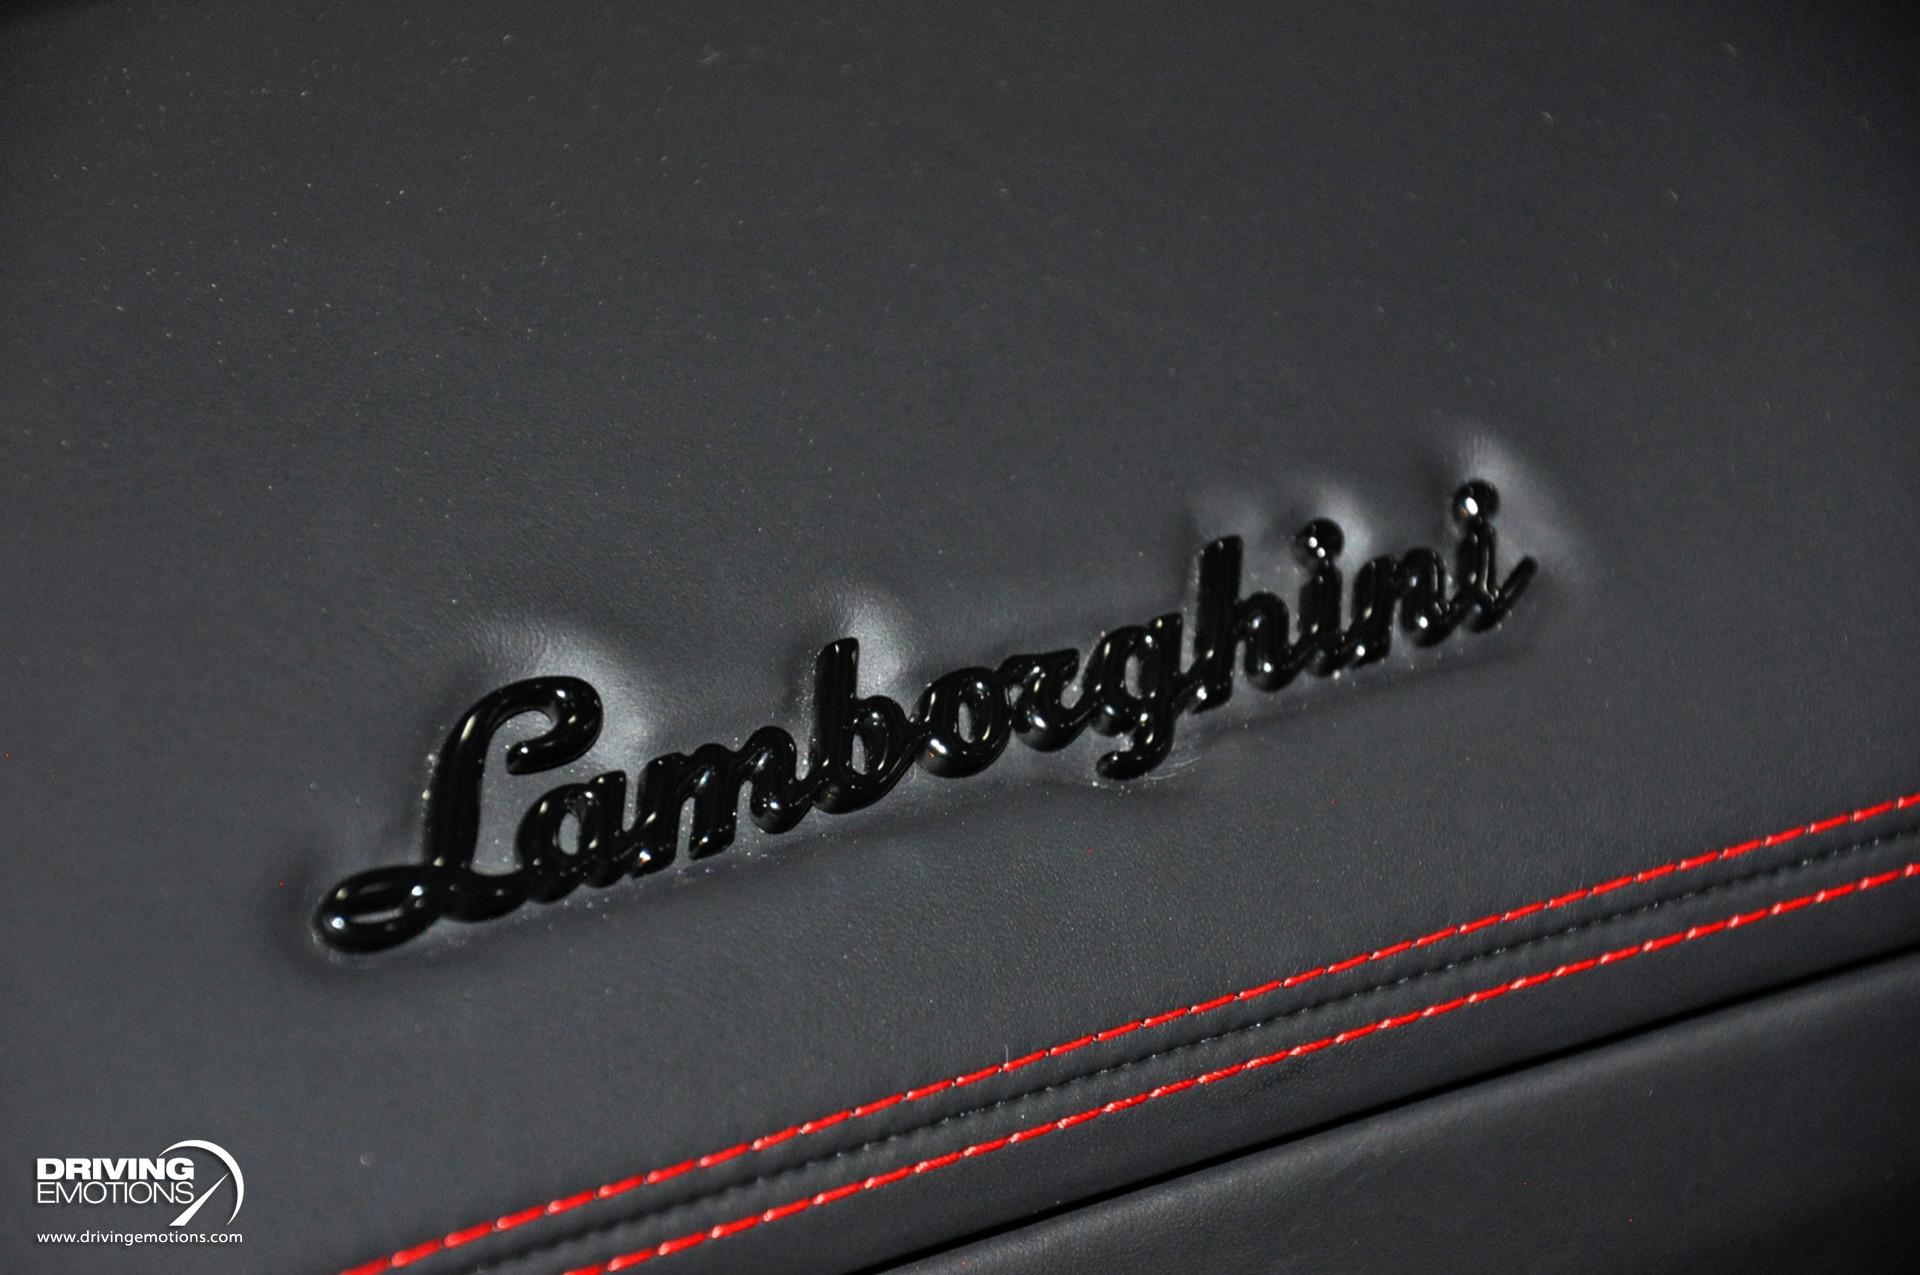 Used 2017 Lamborghini Aventador S LP 740-4 S Coupe! $503K MSRP!! | Lake Park, FL